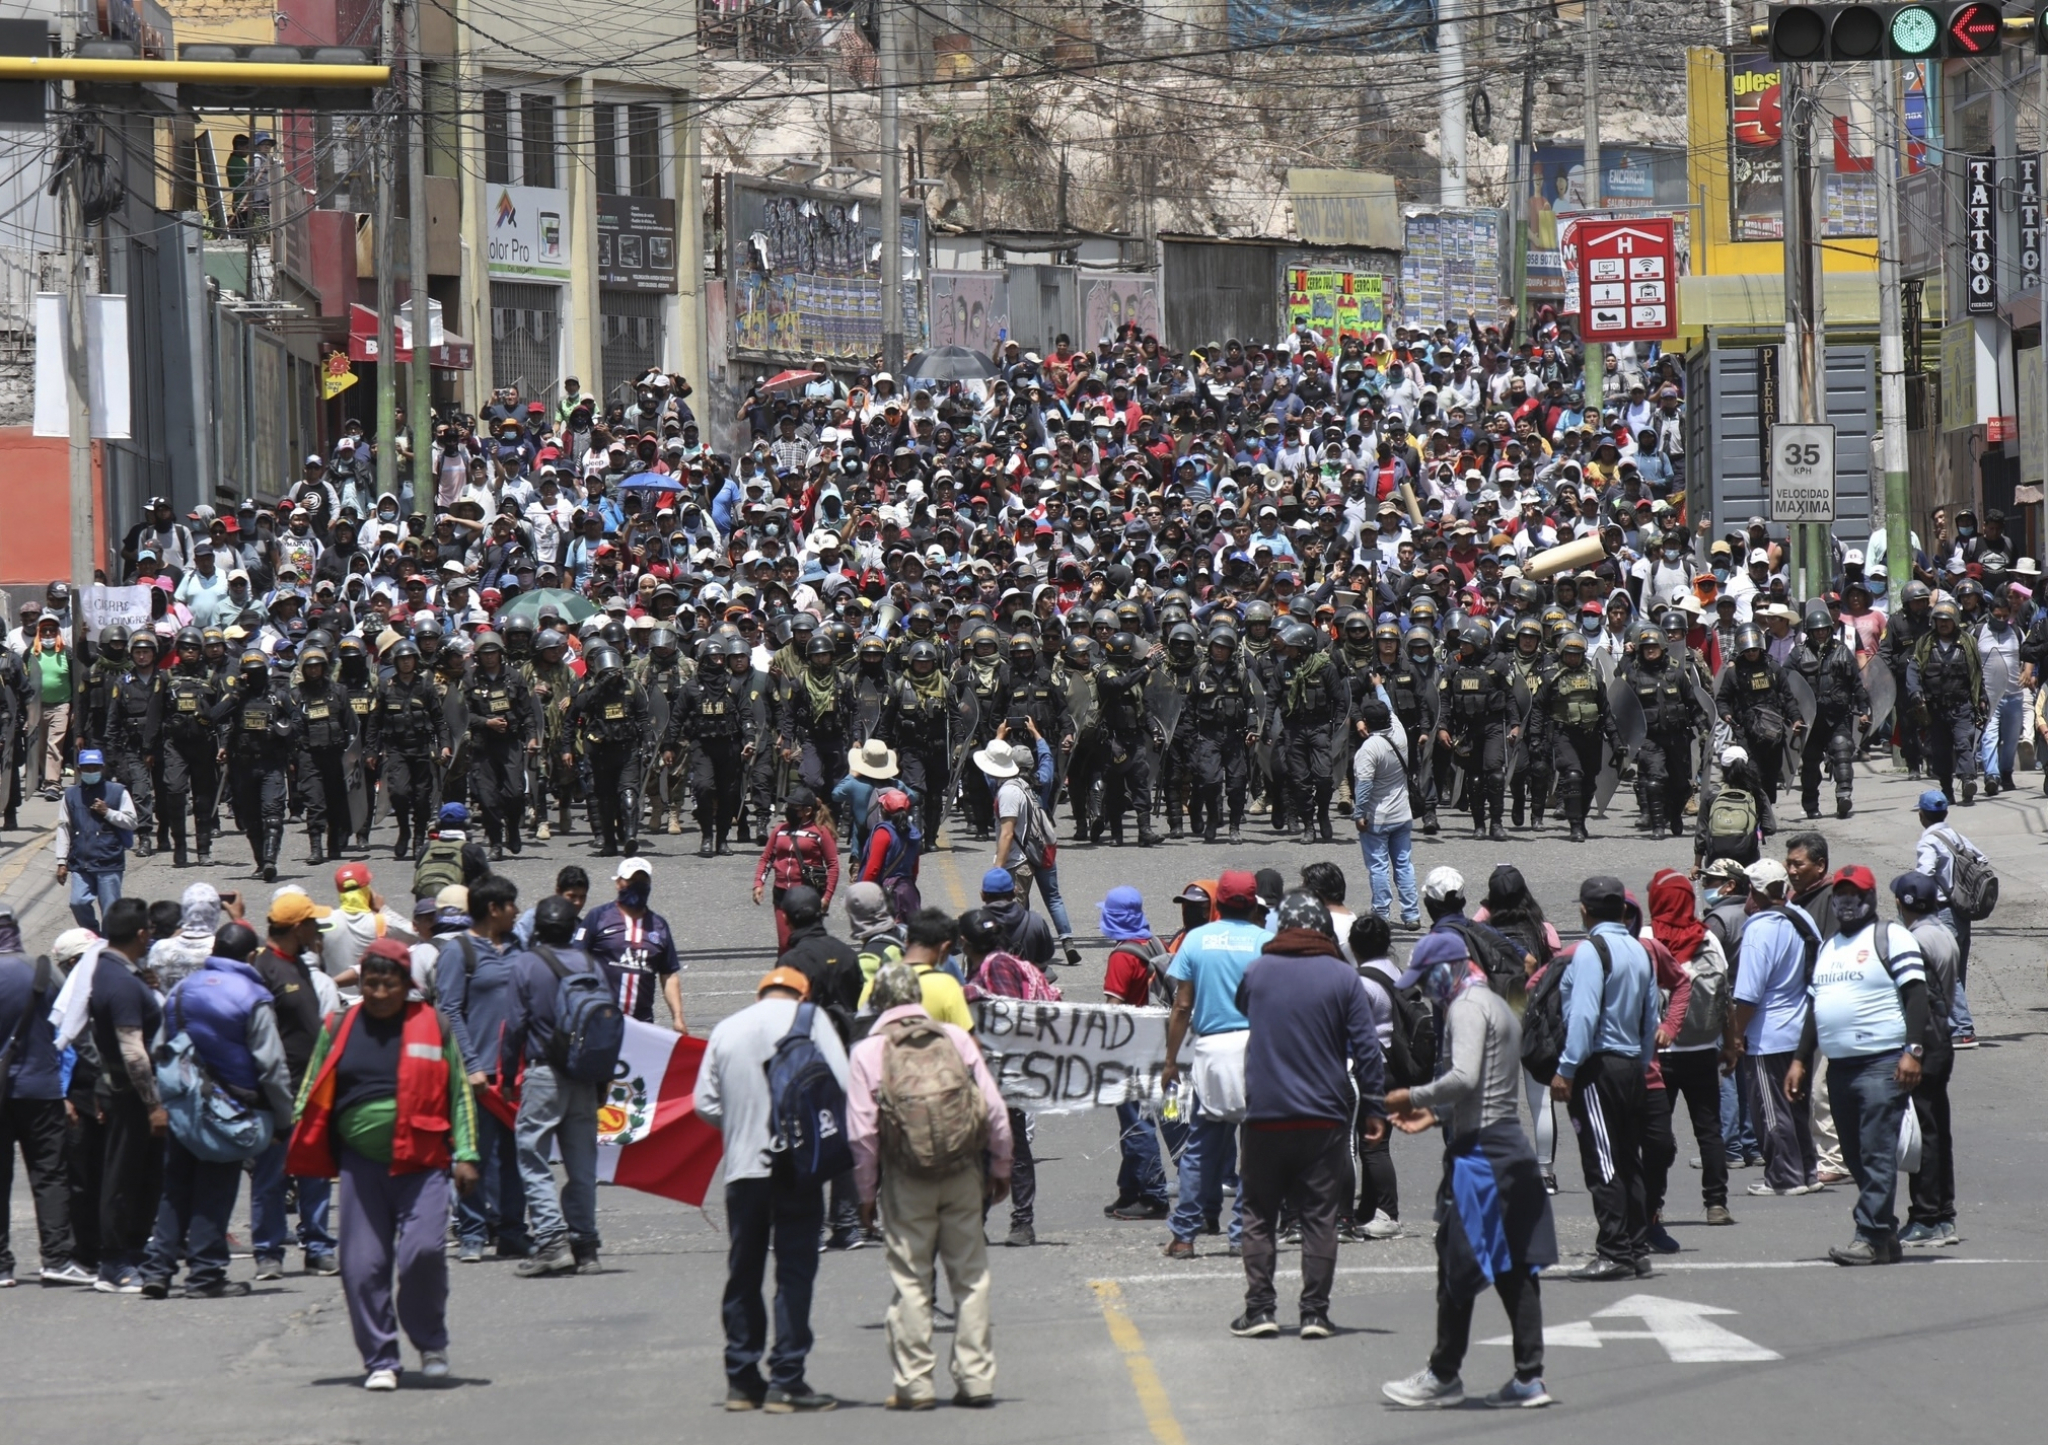 PROTESTI NE PRESTAJU Vlada Perua proglasila vanredno stanje